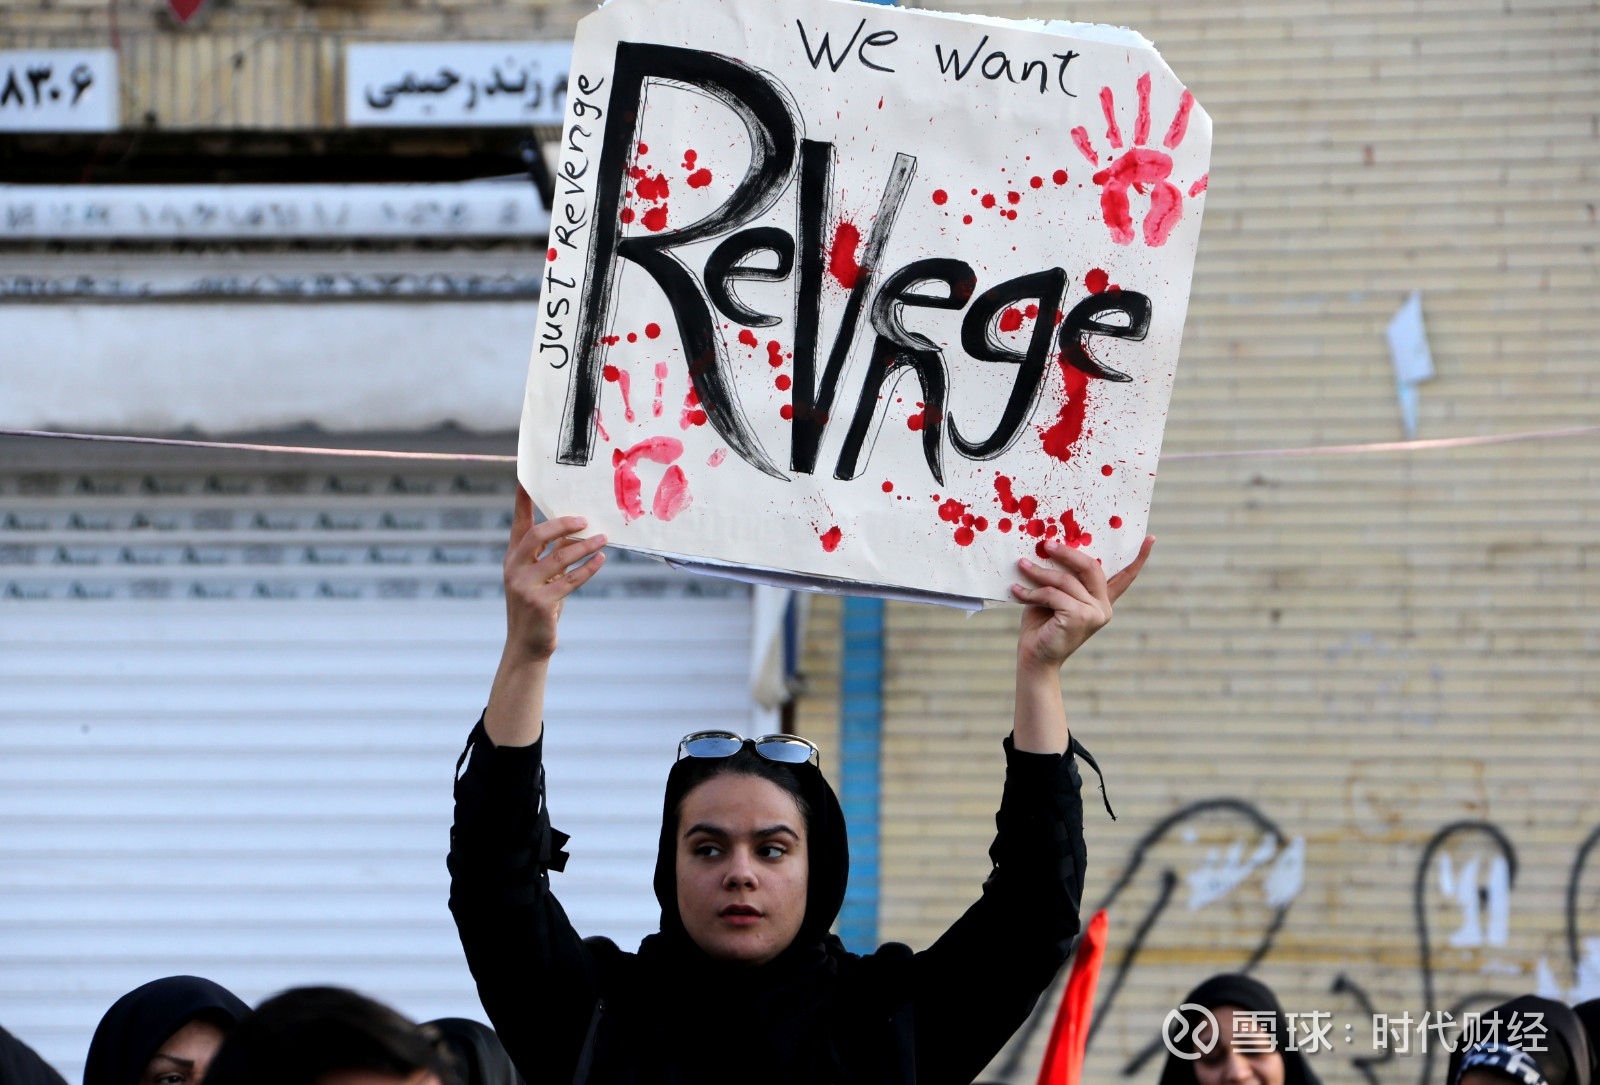 伊朗首都德黑兰街头举着"我们想报仇"的伊朗民众.(图源:cnn)